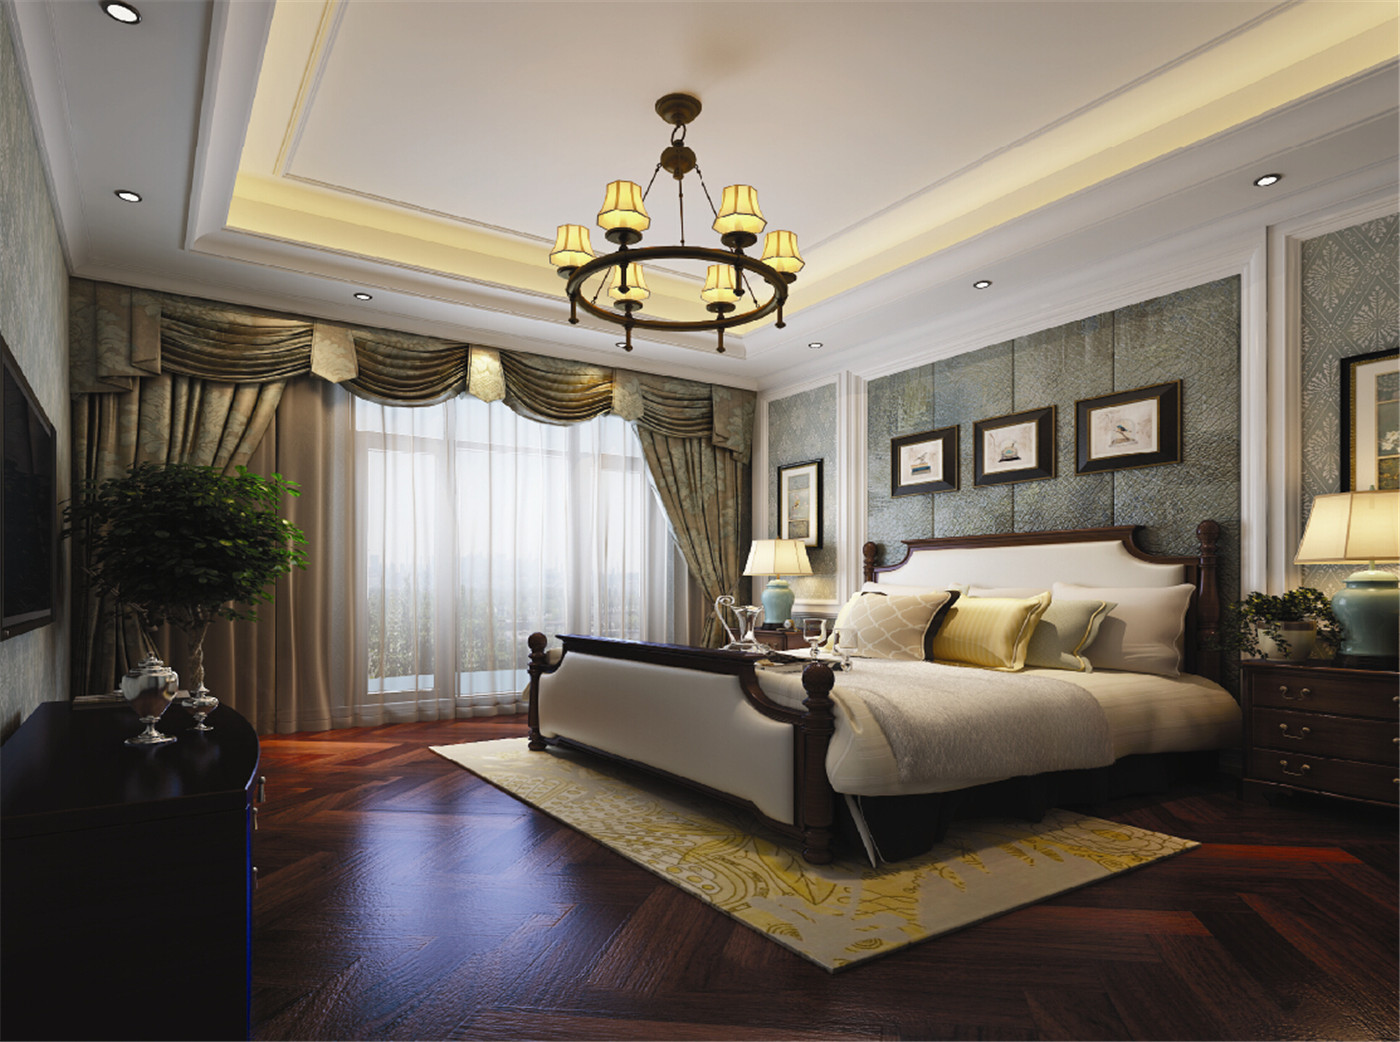 上海假日 别墅装修 别墅设计 欧美风格 腾龙设计 卧室图片来自腾龙设计在上海假日别墅装修简美风格设计的分享